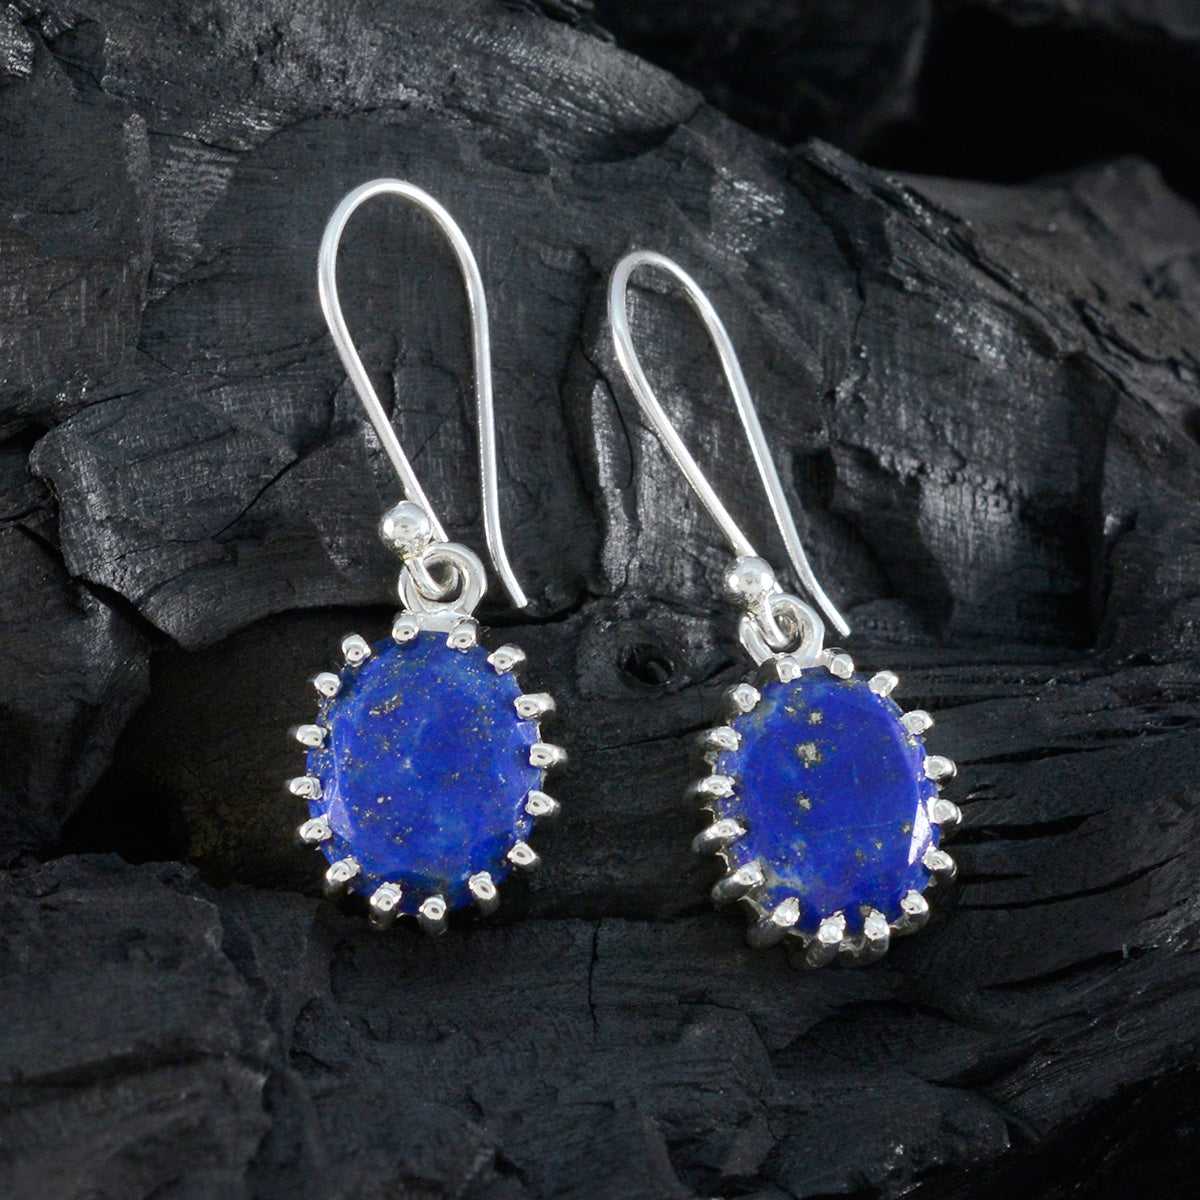 Riyo Hot 925 Sterling Silver Earring For Women Lapis Lazuli Earring Bezel Setting Blue Earring Dangle Earring